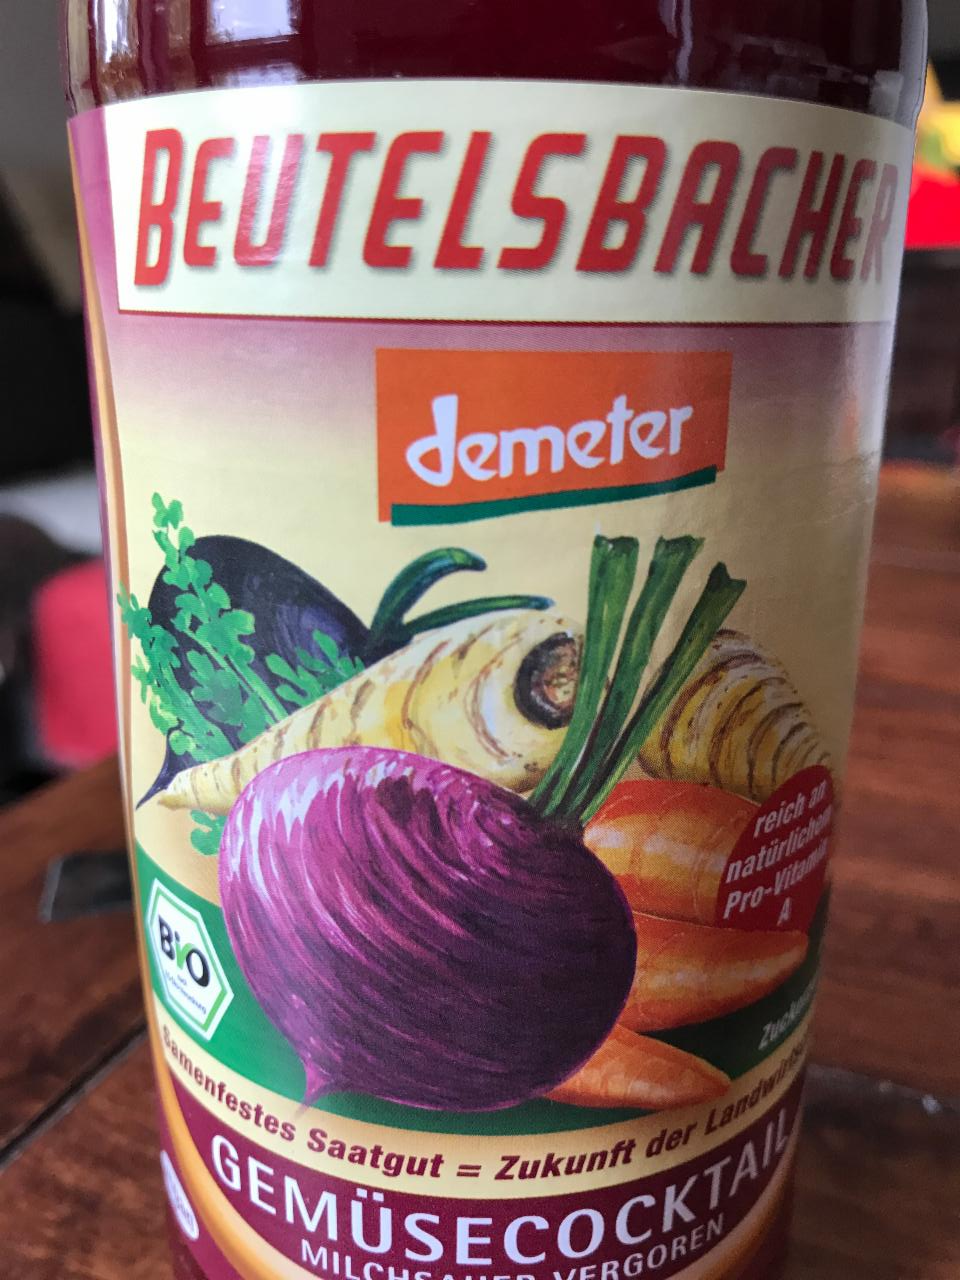 Fotografie - Beutelsbacher Gemüsecocktail Demeter